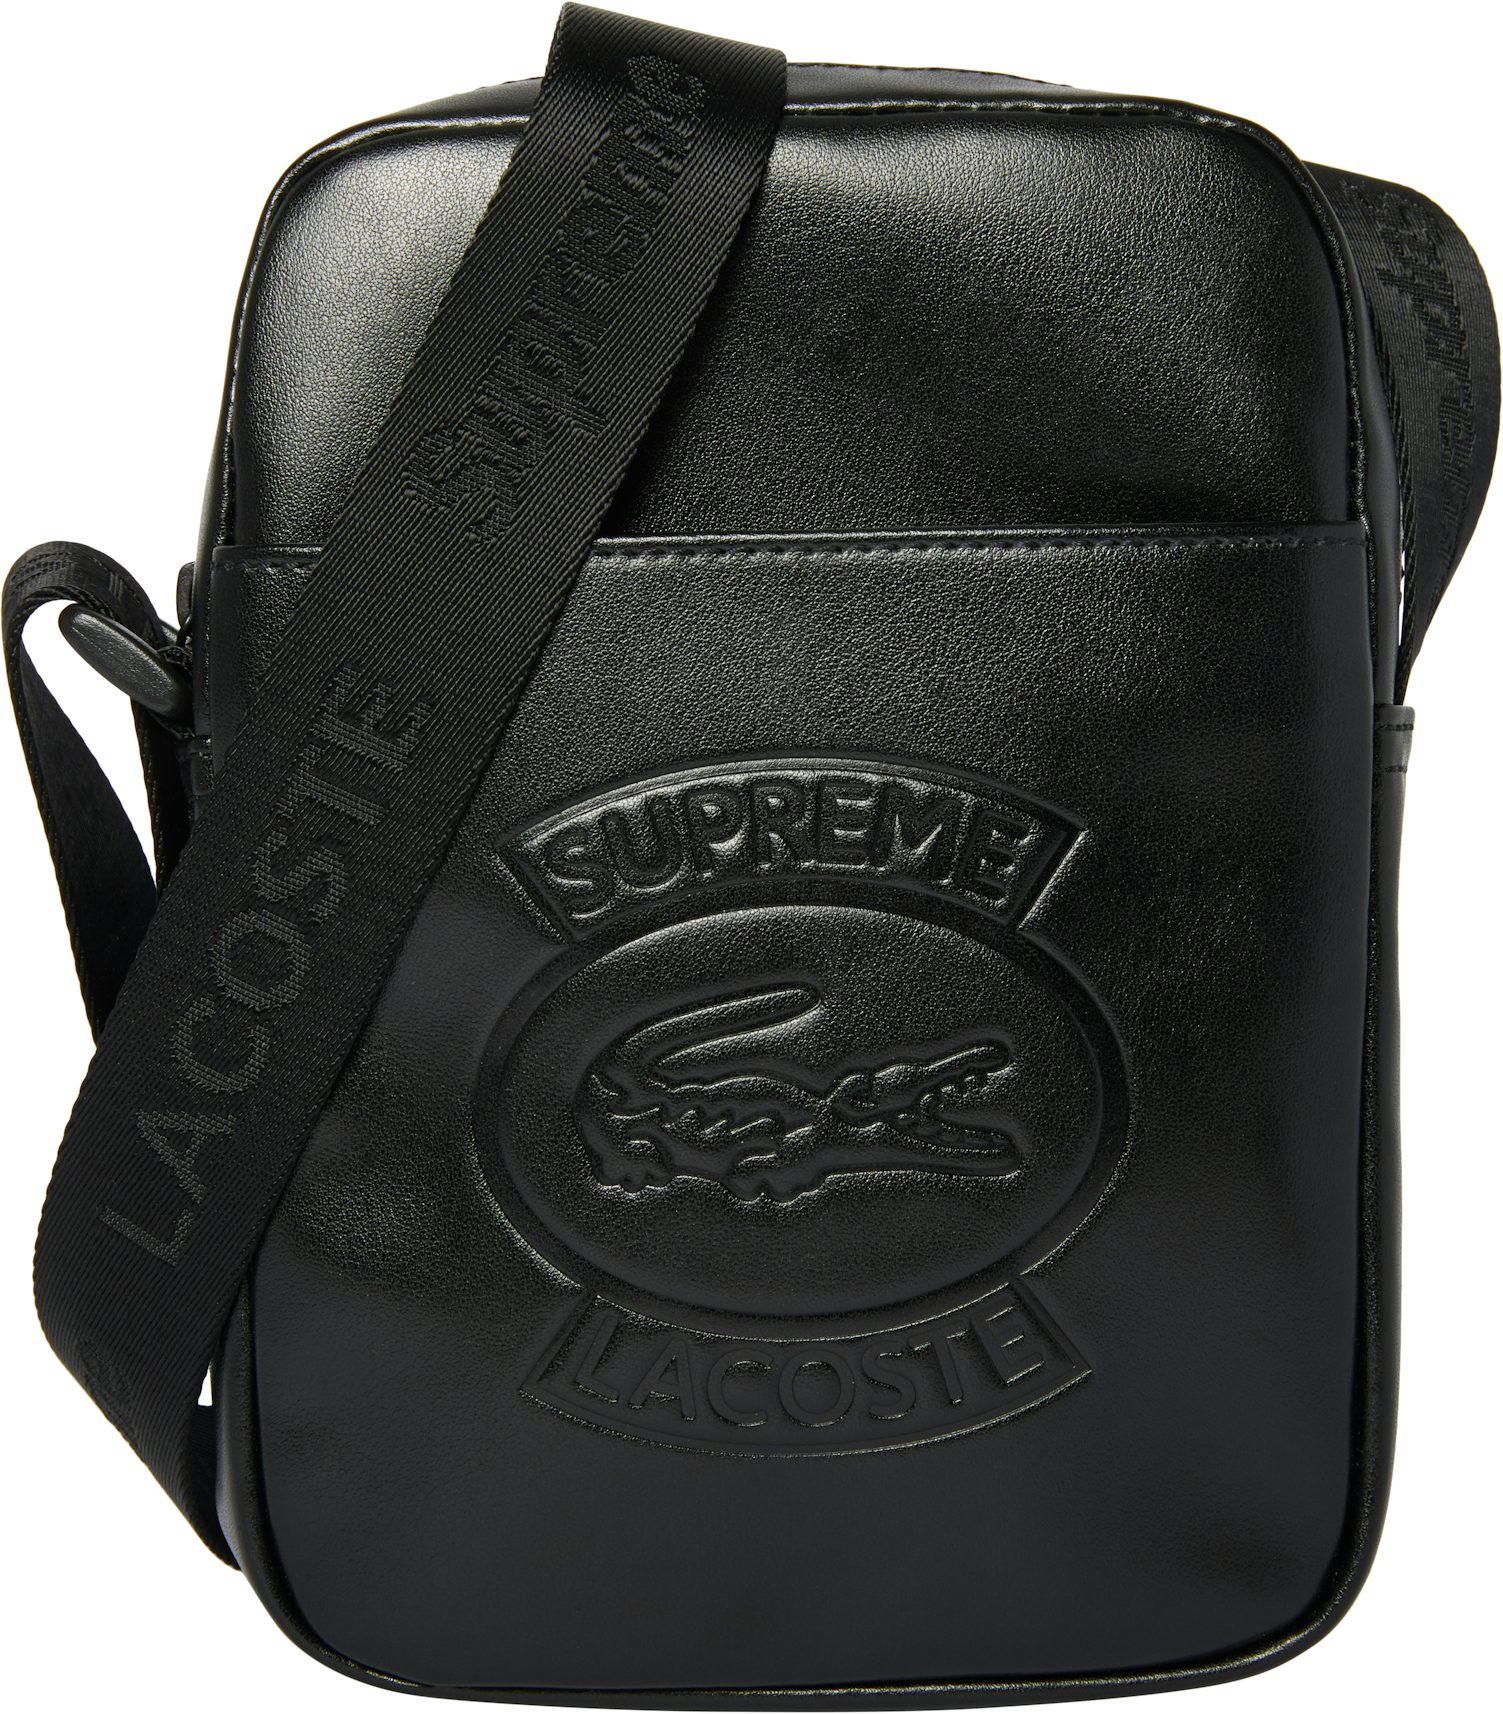 Lacoste Signature Green Leather Shoulder Bag in Black for Men